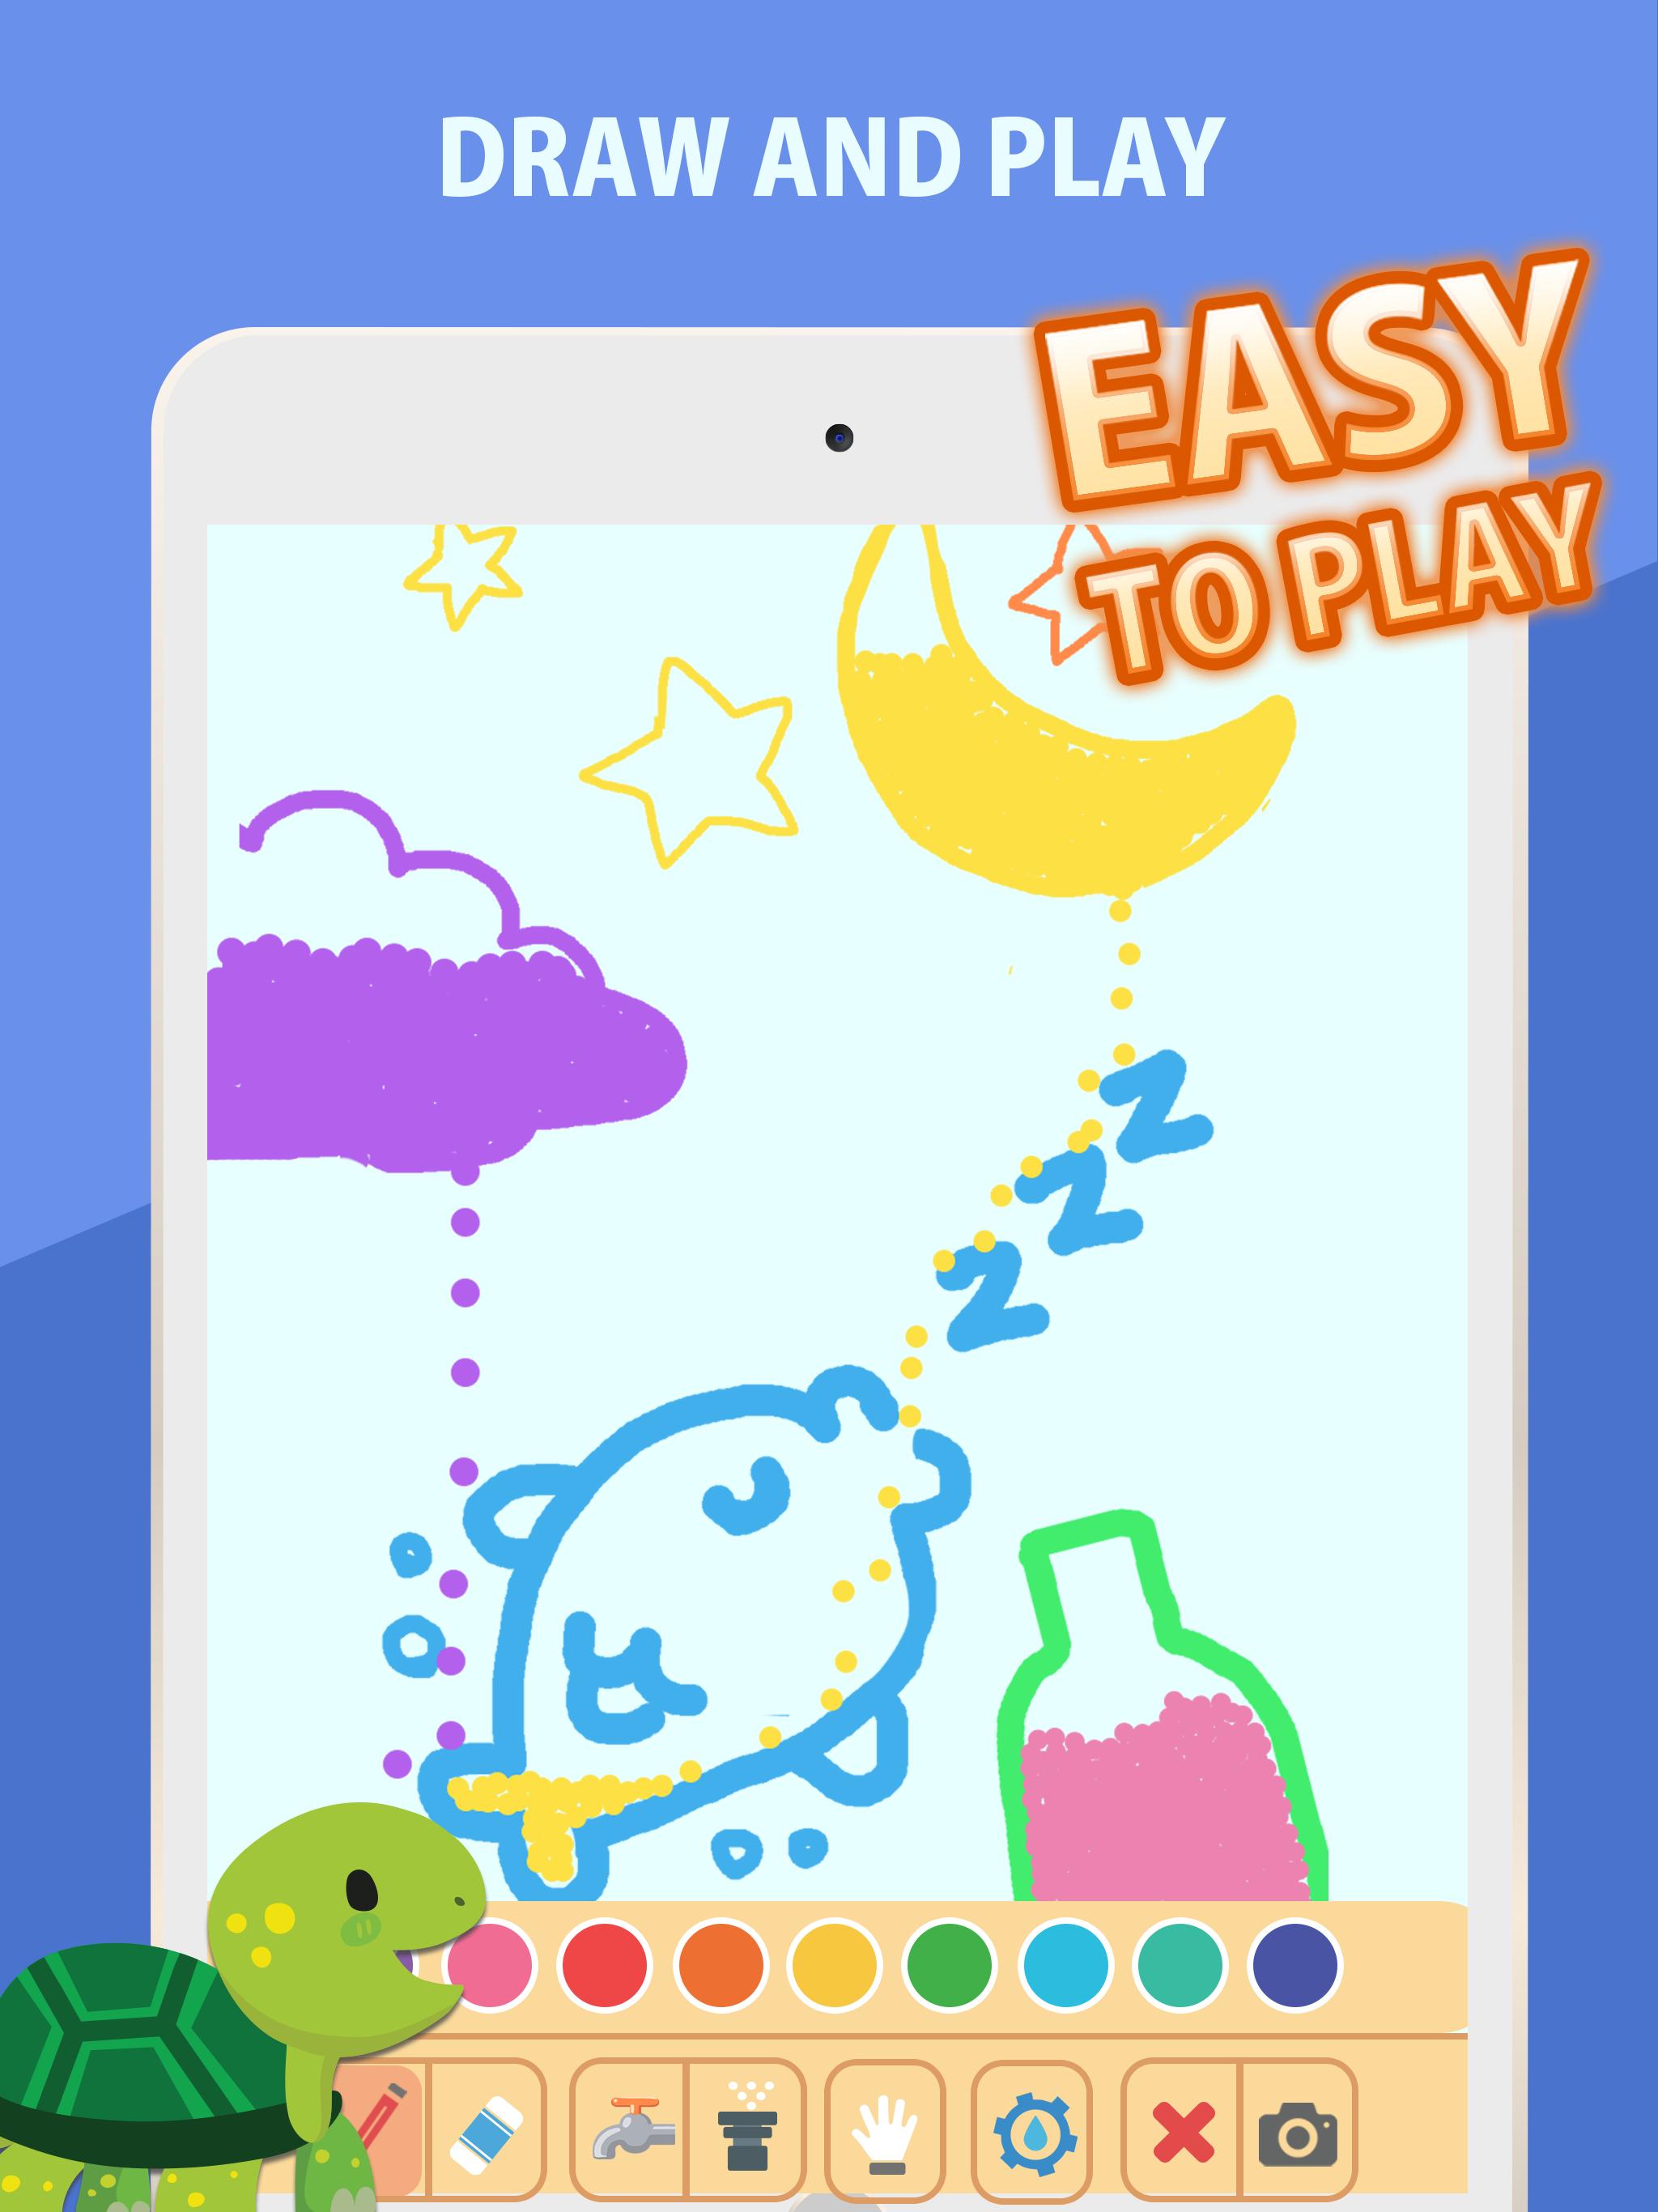 みずあそび7 おすすめ人気無料面白いお絵かき子供 小学生向け暇つぶしスマホ知育ゲームアプリ For Android Apk Download